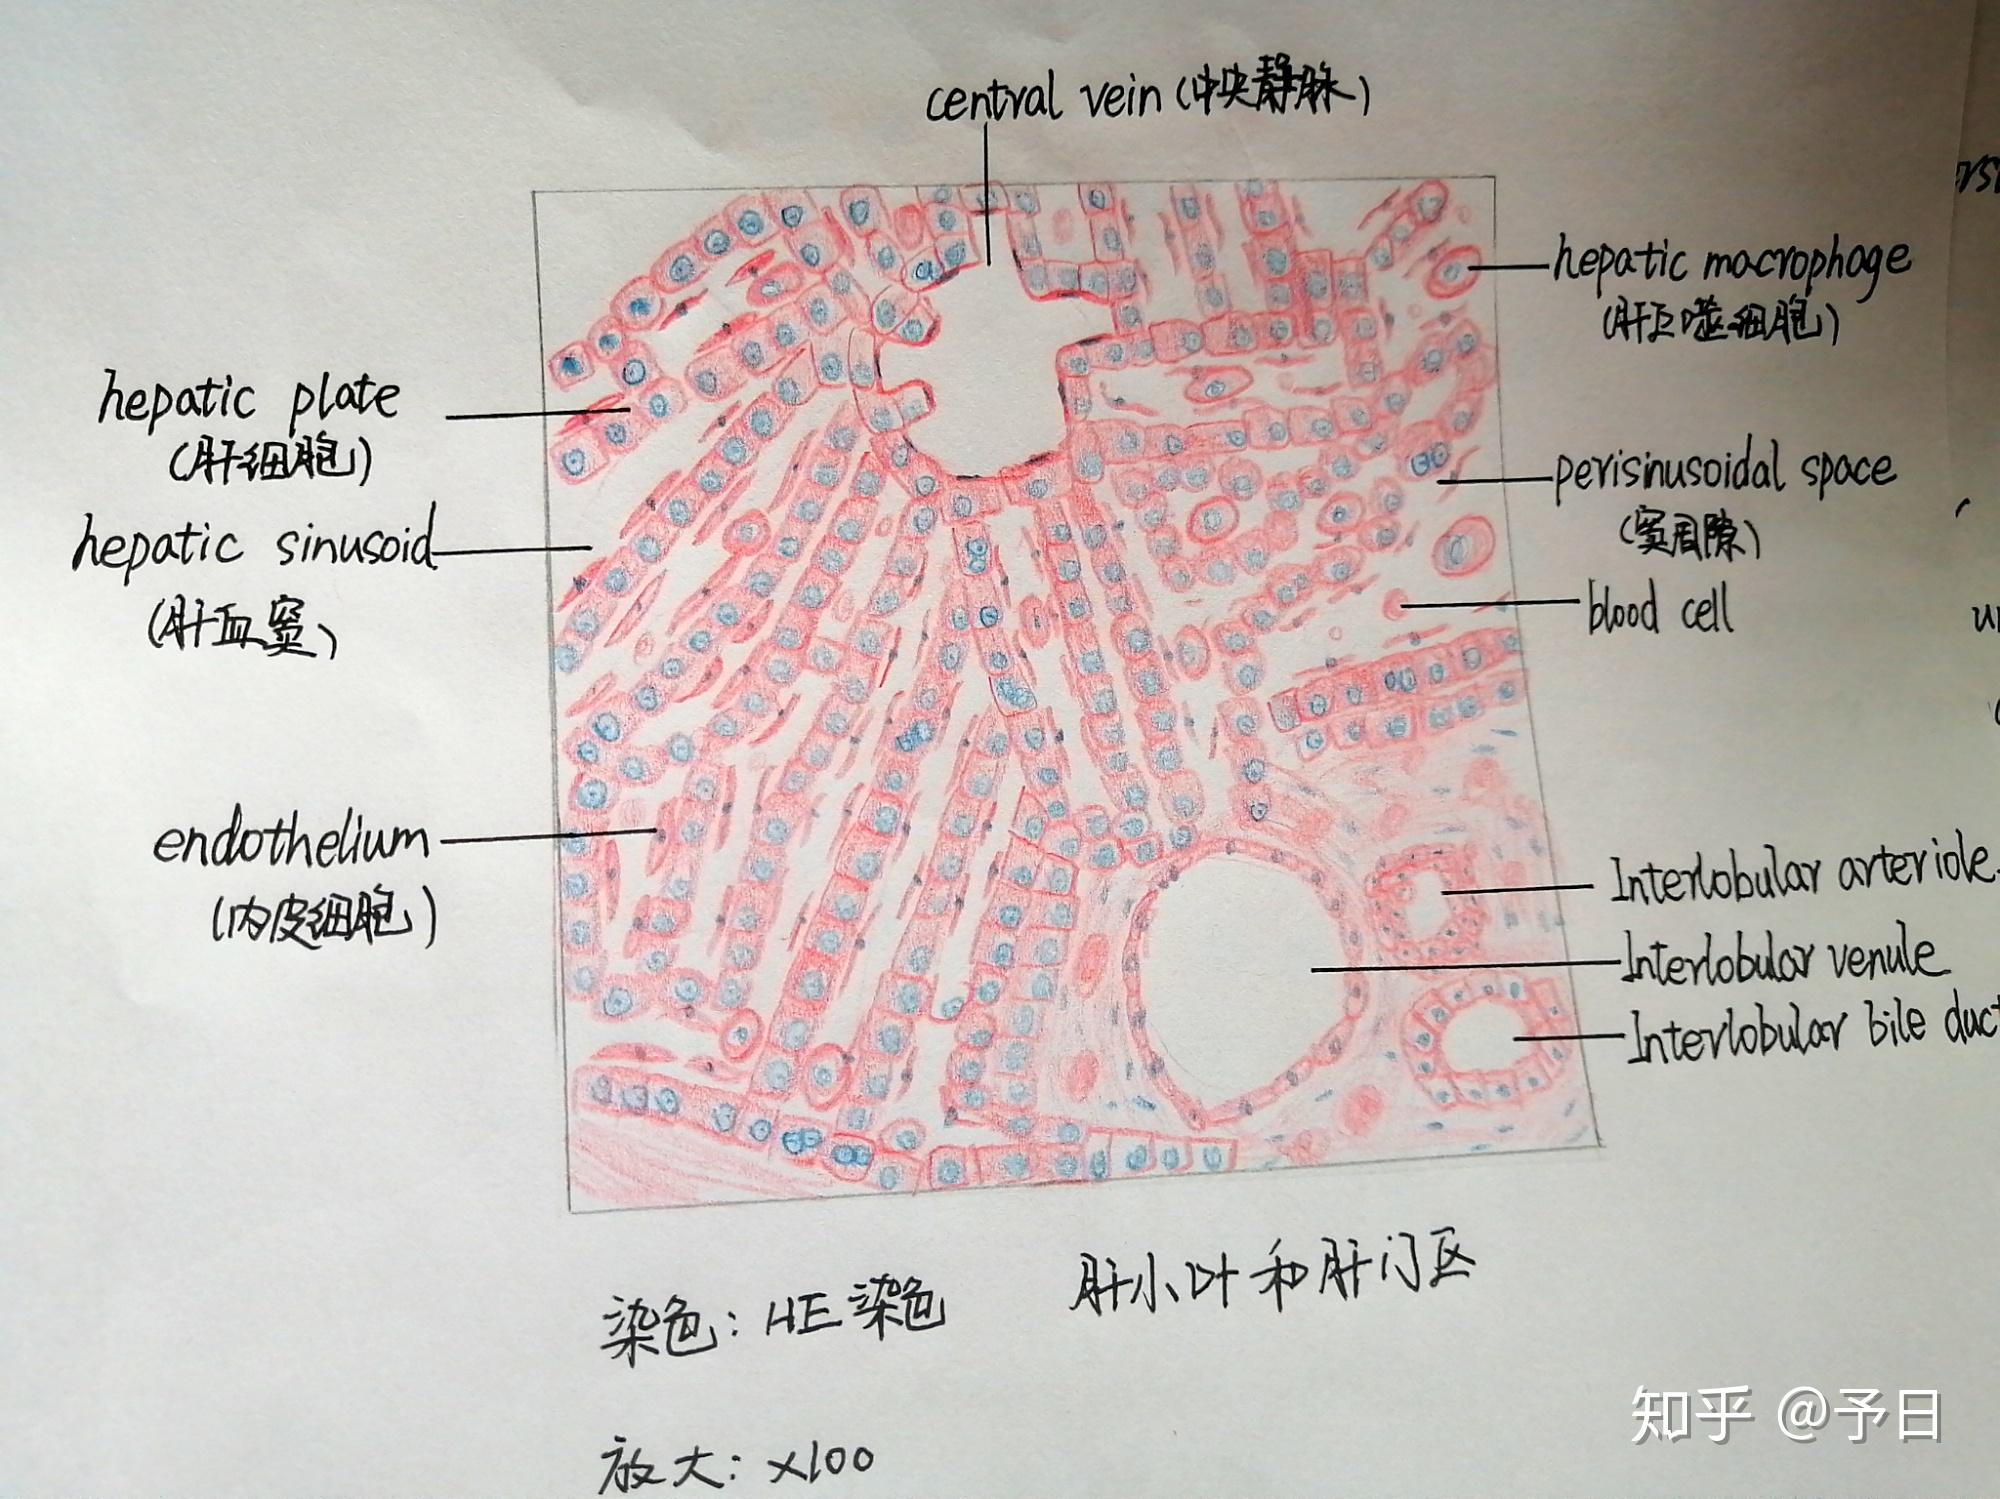 组胚实验红蓝铅笔图随时更新哟